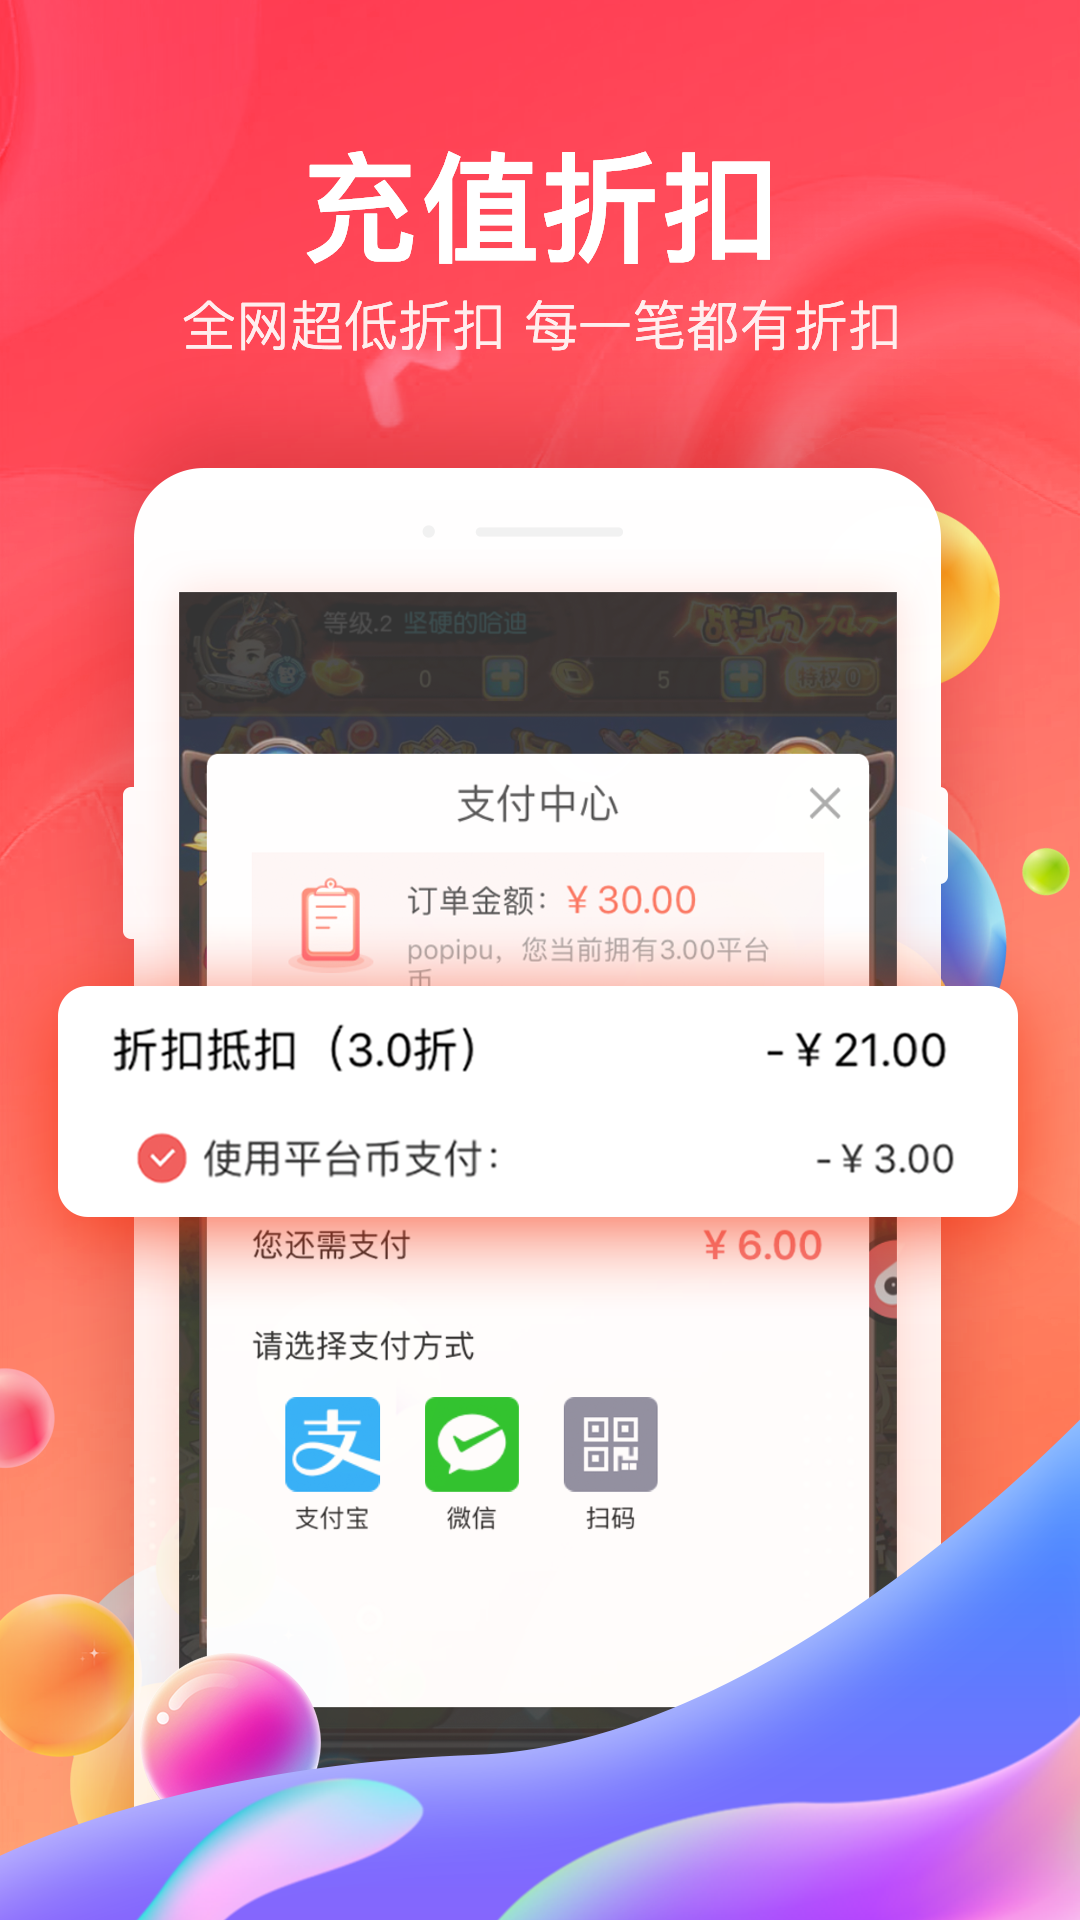 66手游平台app官方版